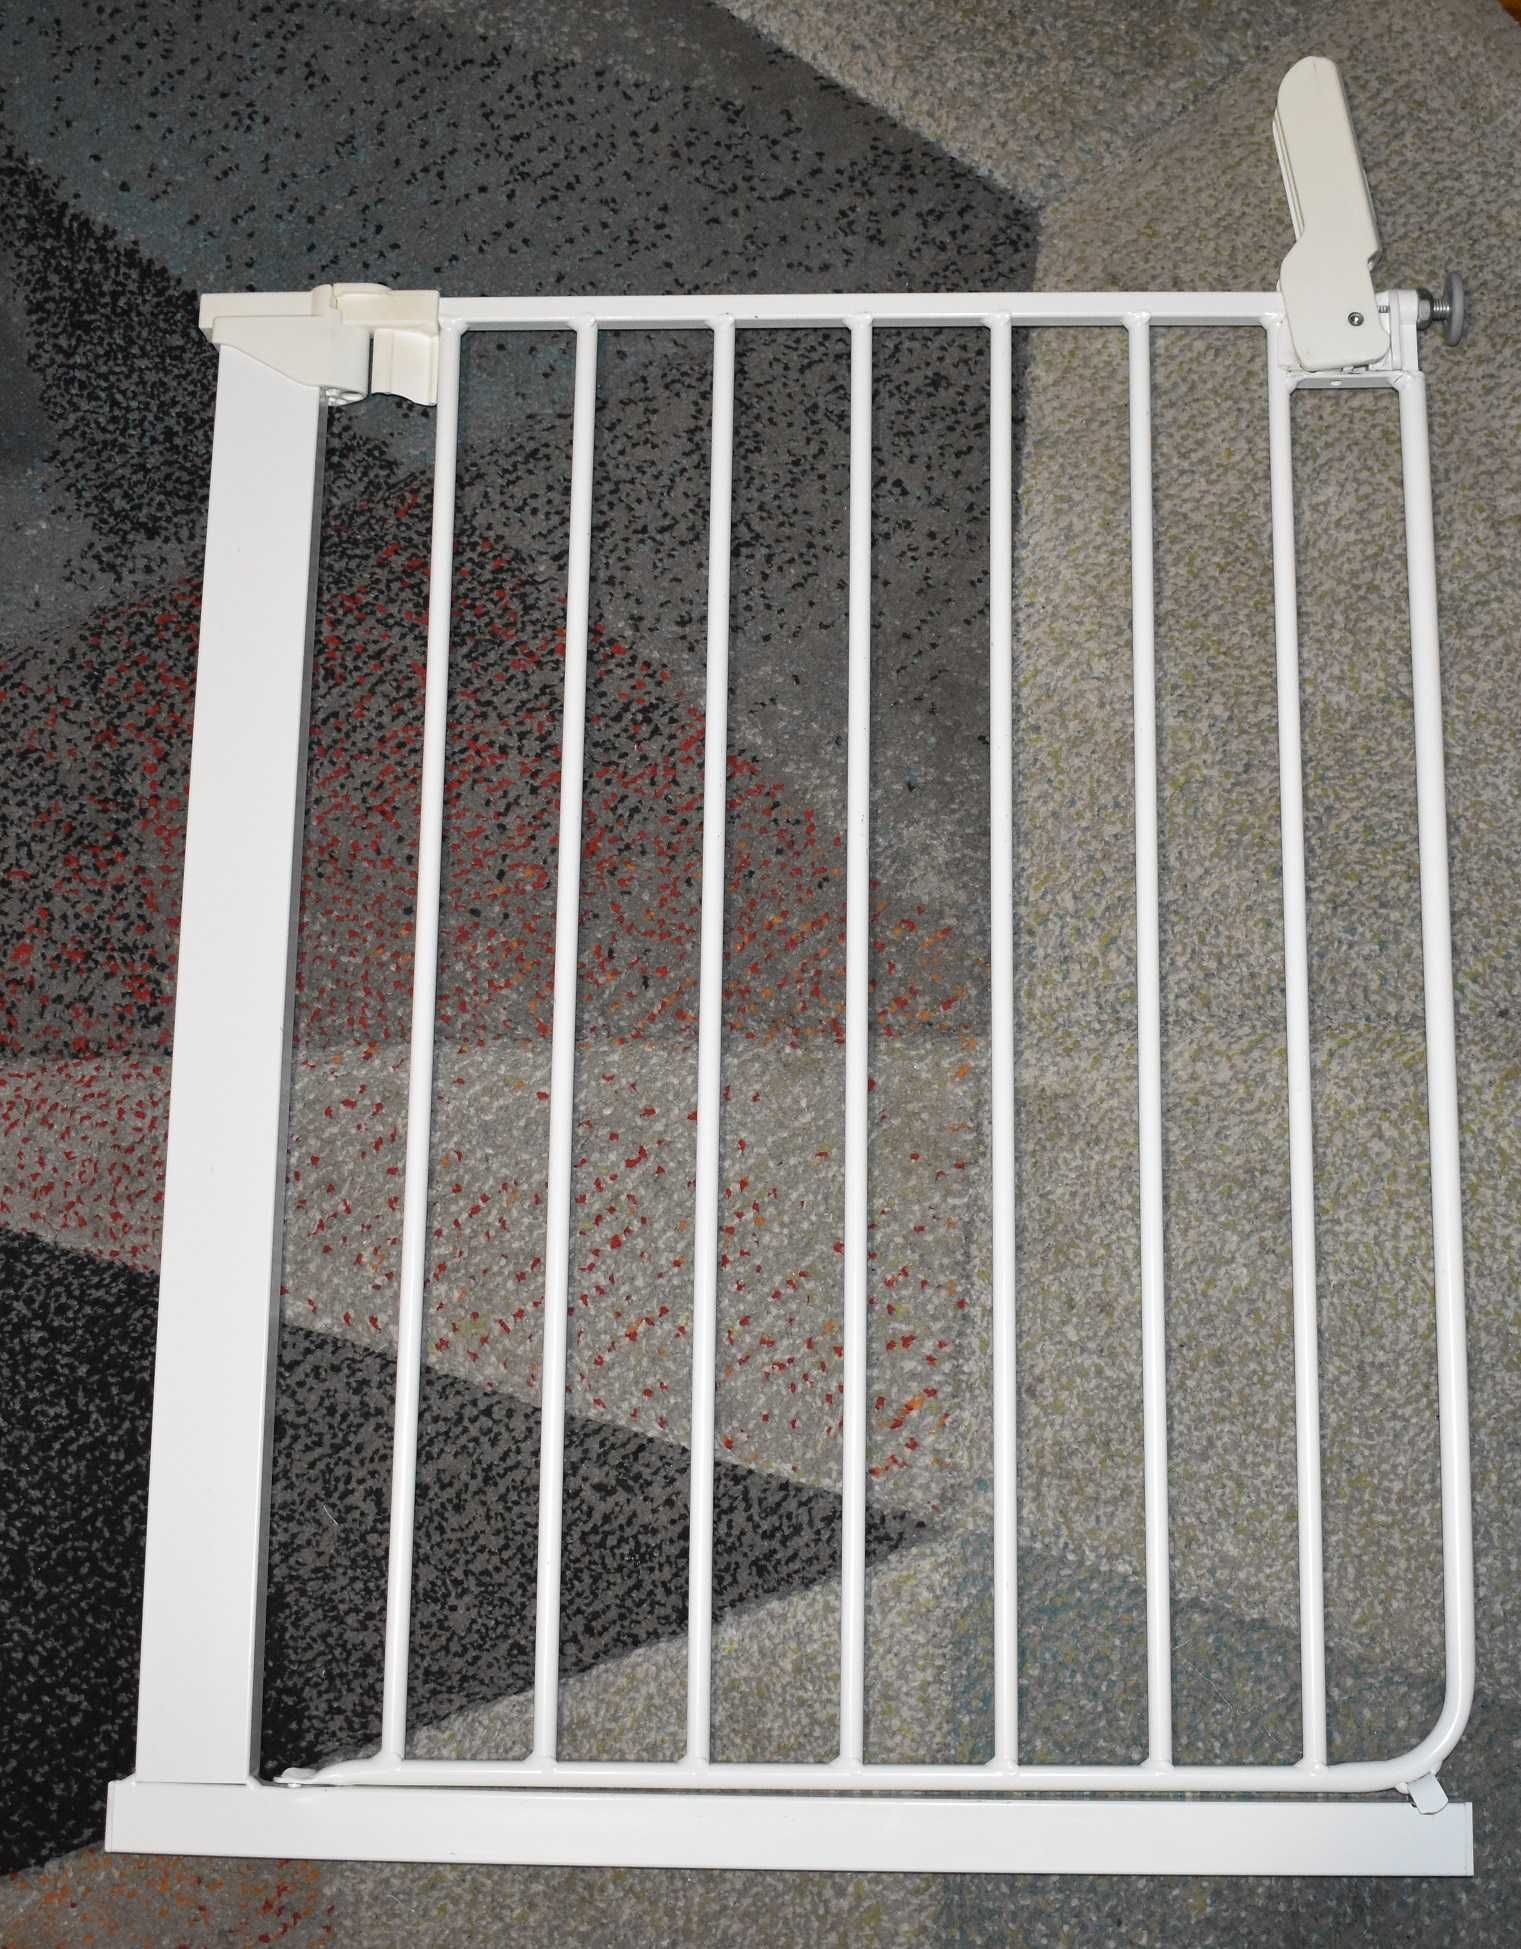 Bramka,barierka zabezpieczająca,ochronna do drzwi, rozporowa 63-69,5cm